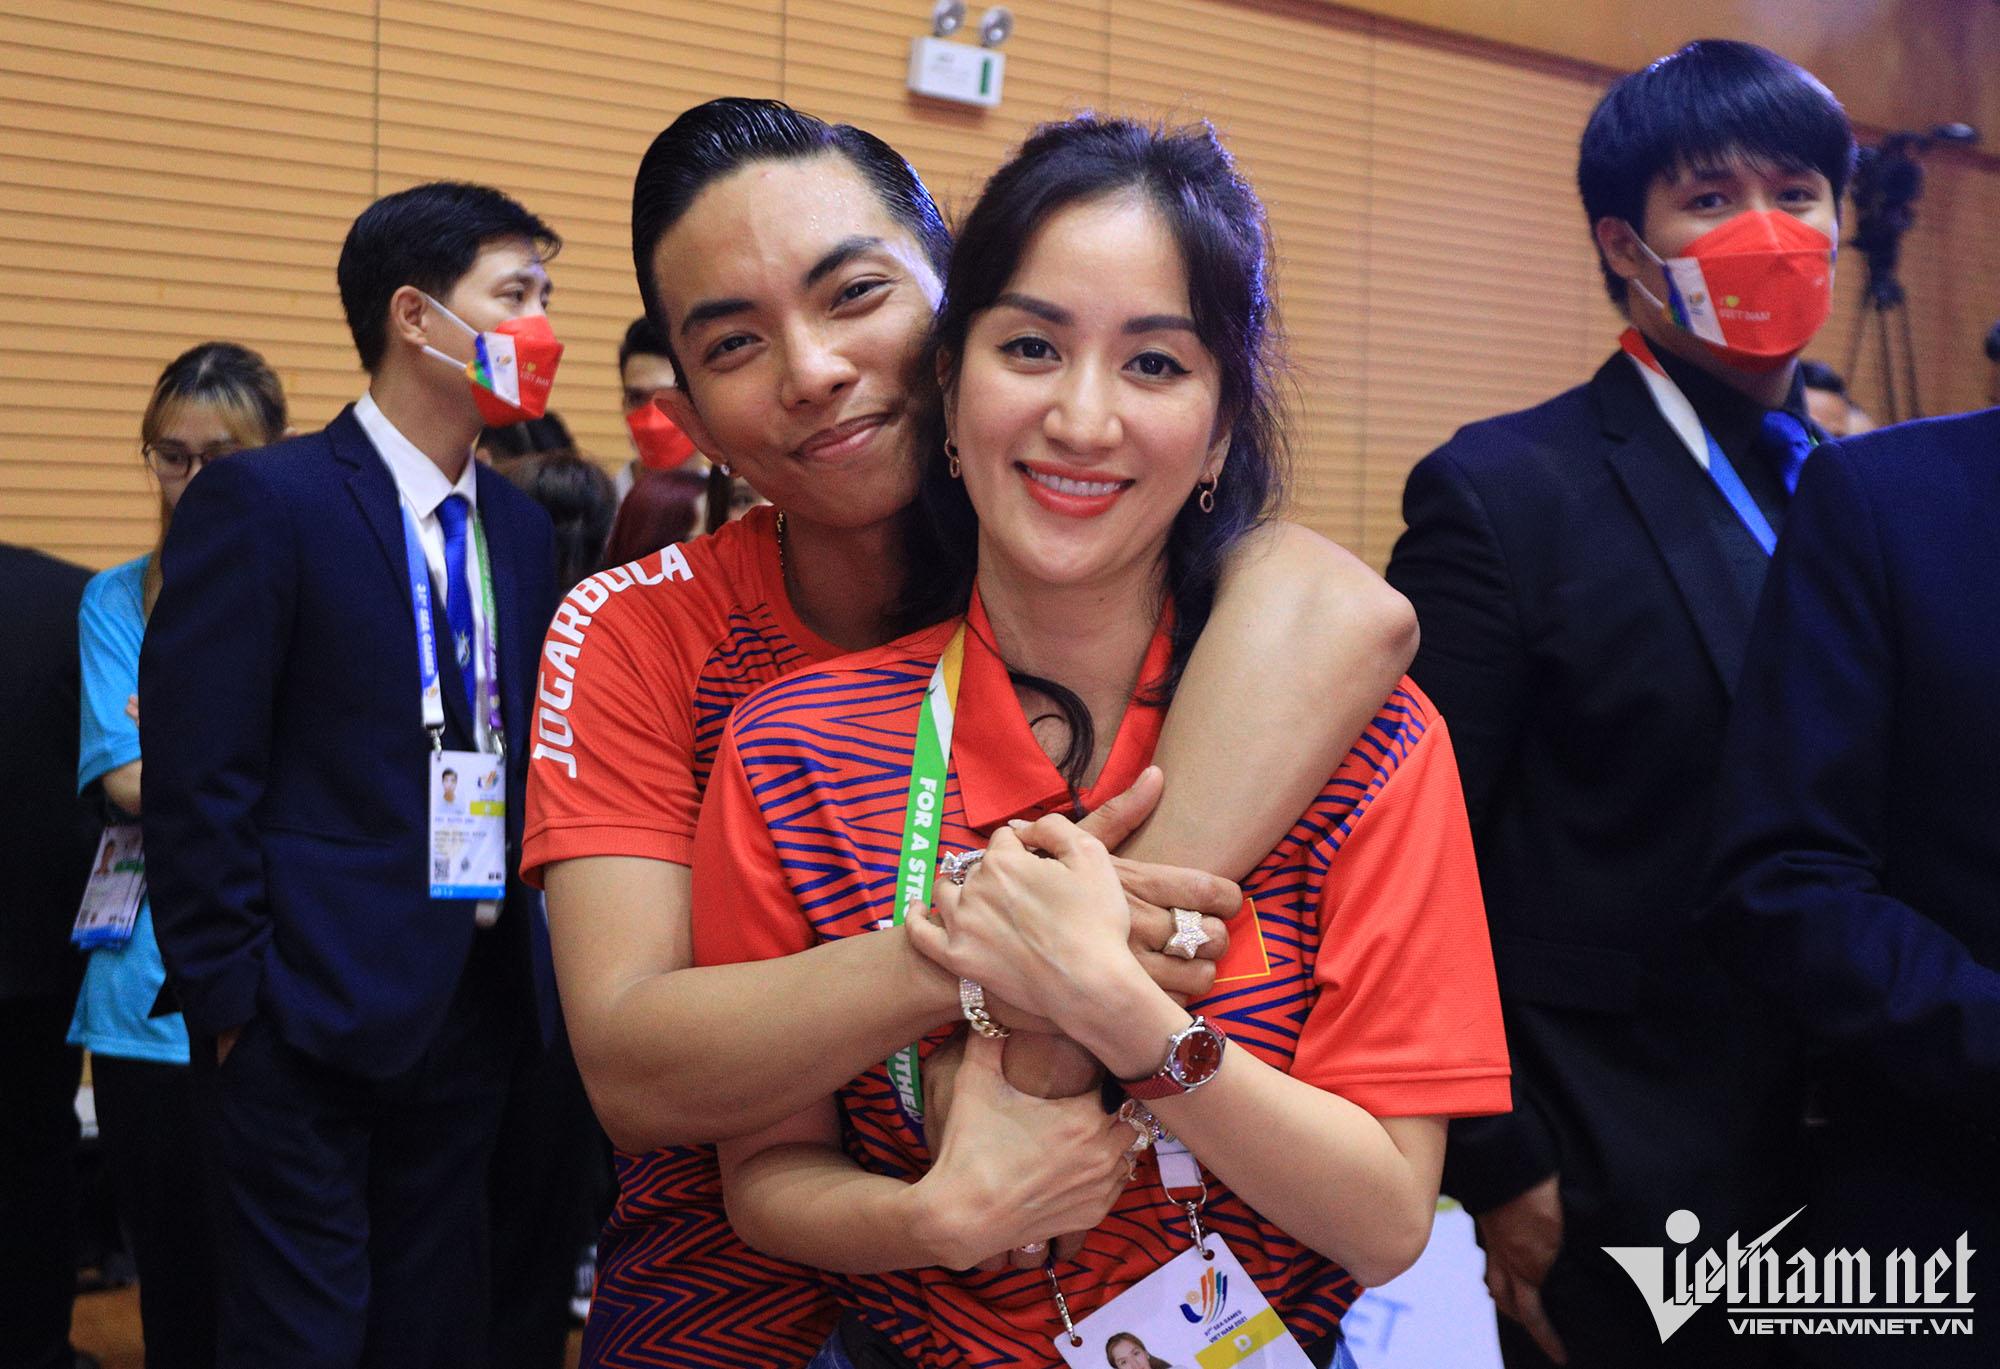  Trên trang cá nhân Khánh Thi vui mừng chia sẻ với người hâm mộ về thành tích của Phan Hiển. Cô viết: ''Chúc mừng ông xã và bạn nhảy đã tạo nên lịch sử mới cho Dancesport Việt Nam''. 